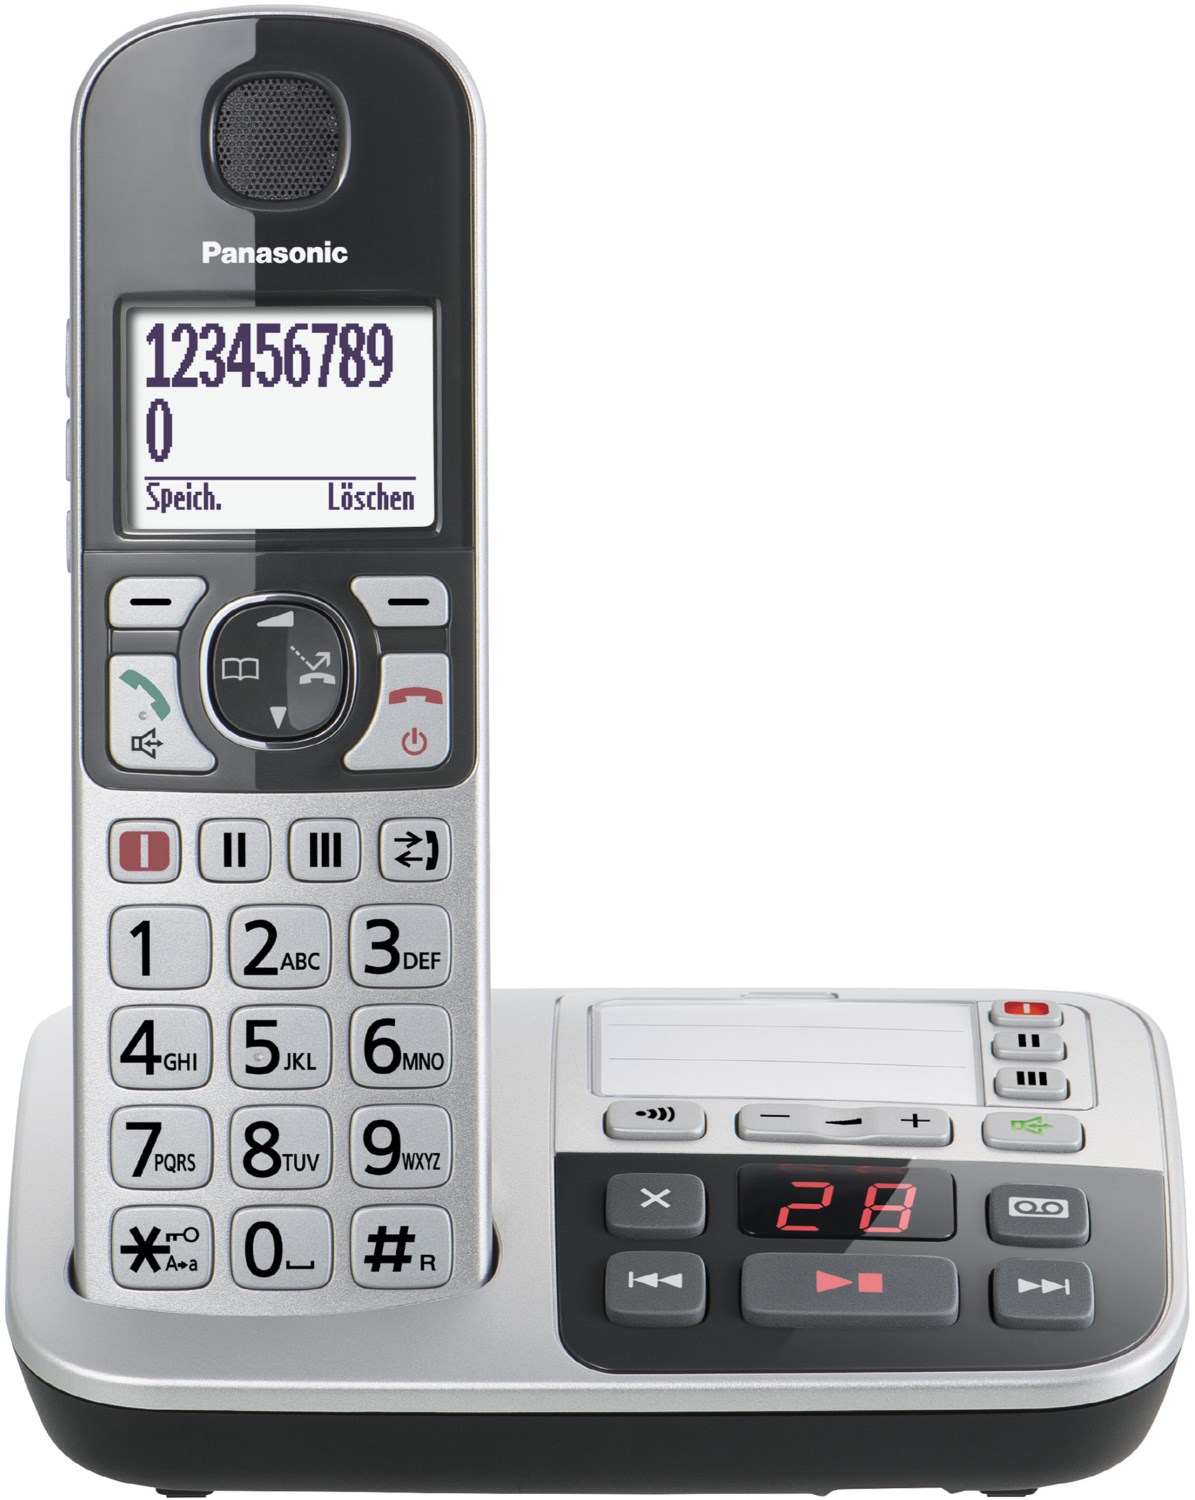 KX-TGE520GS Schnurlostelefon mit Anrufbeantworter silber